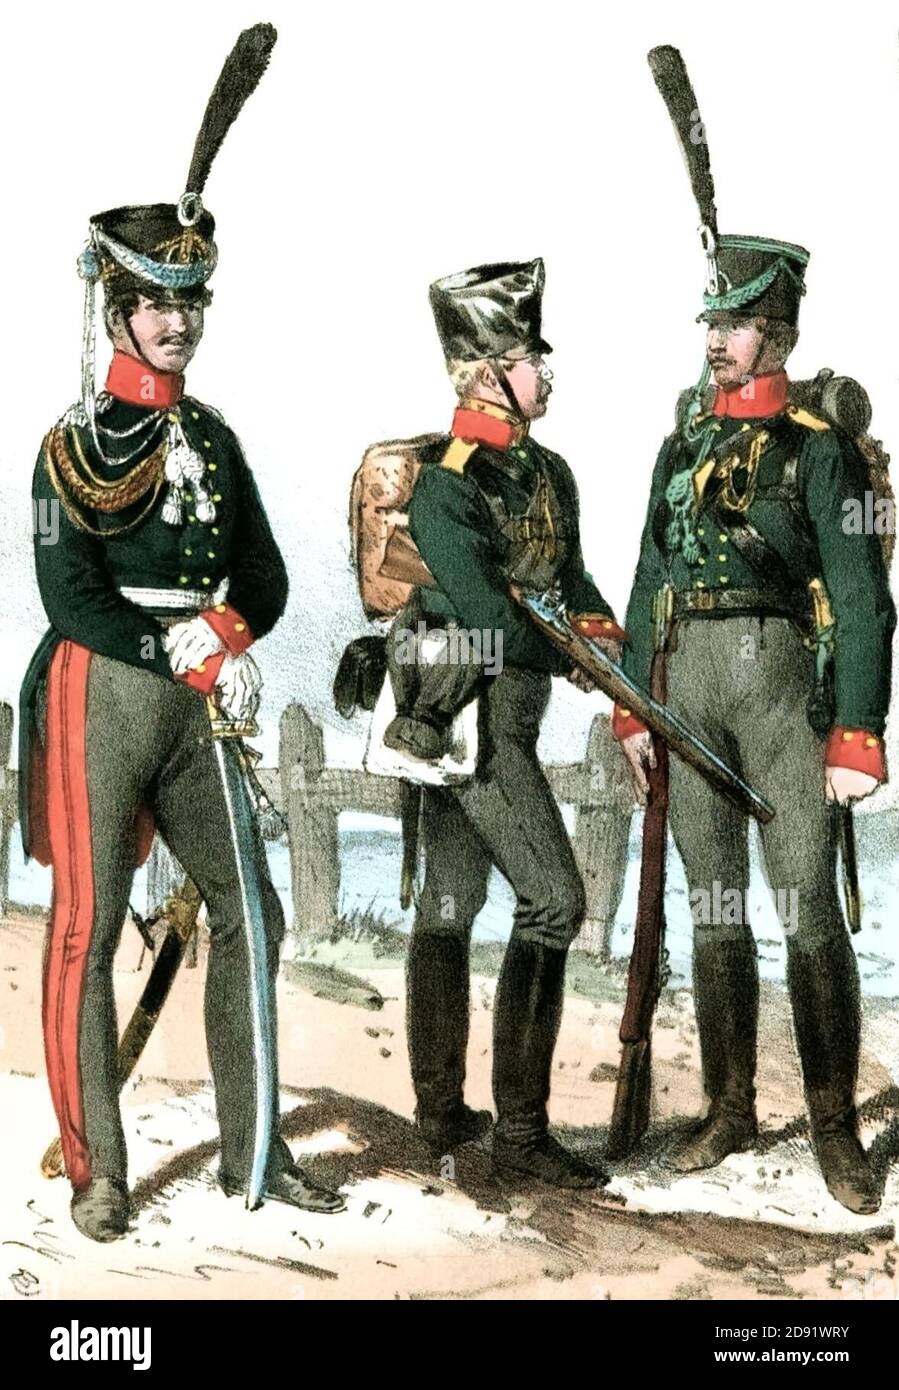 Jäger Bataillon 2 1815. Stock Photo